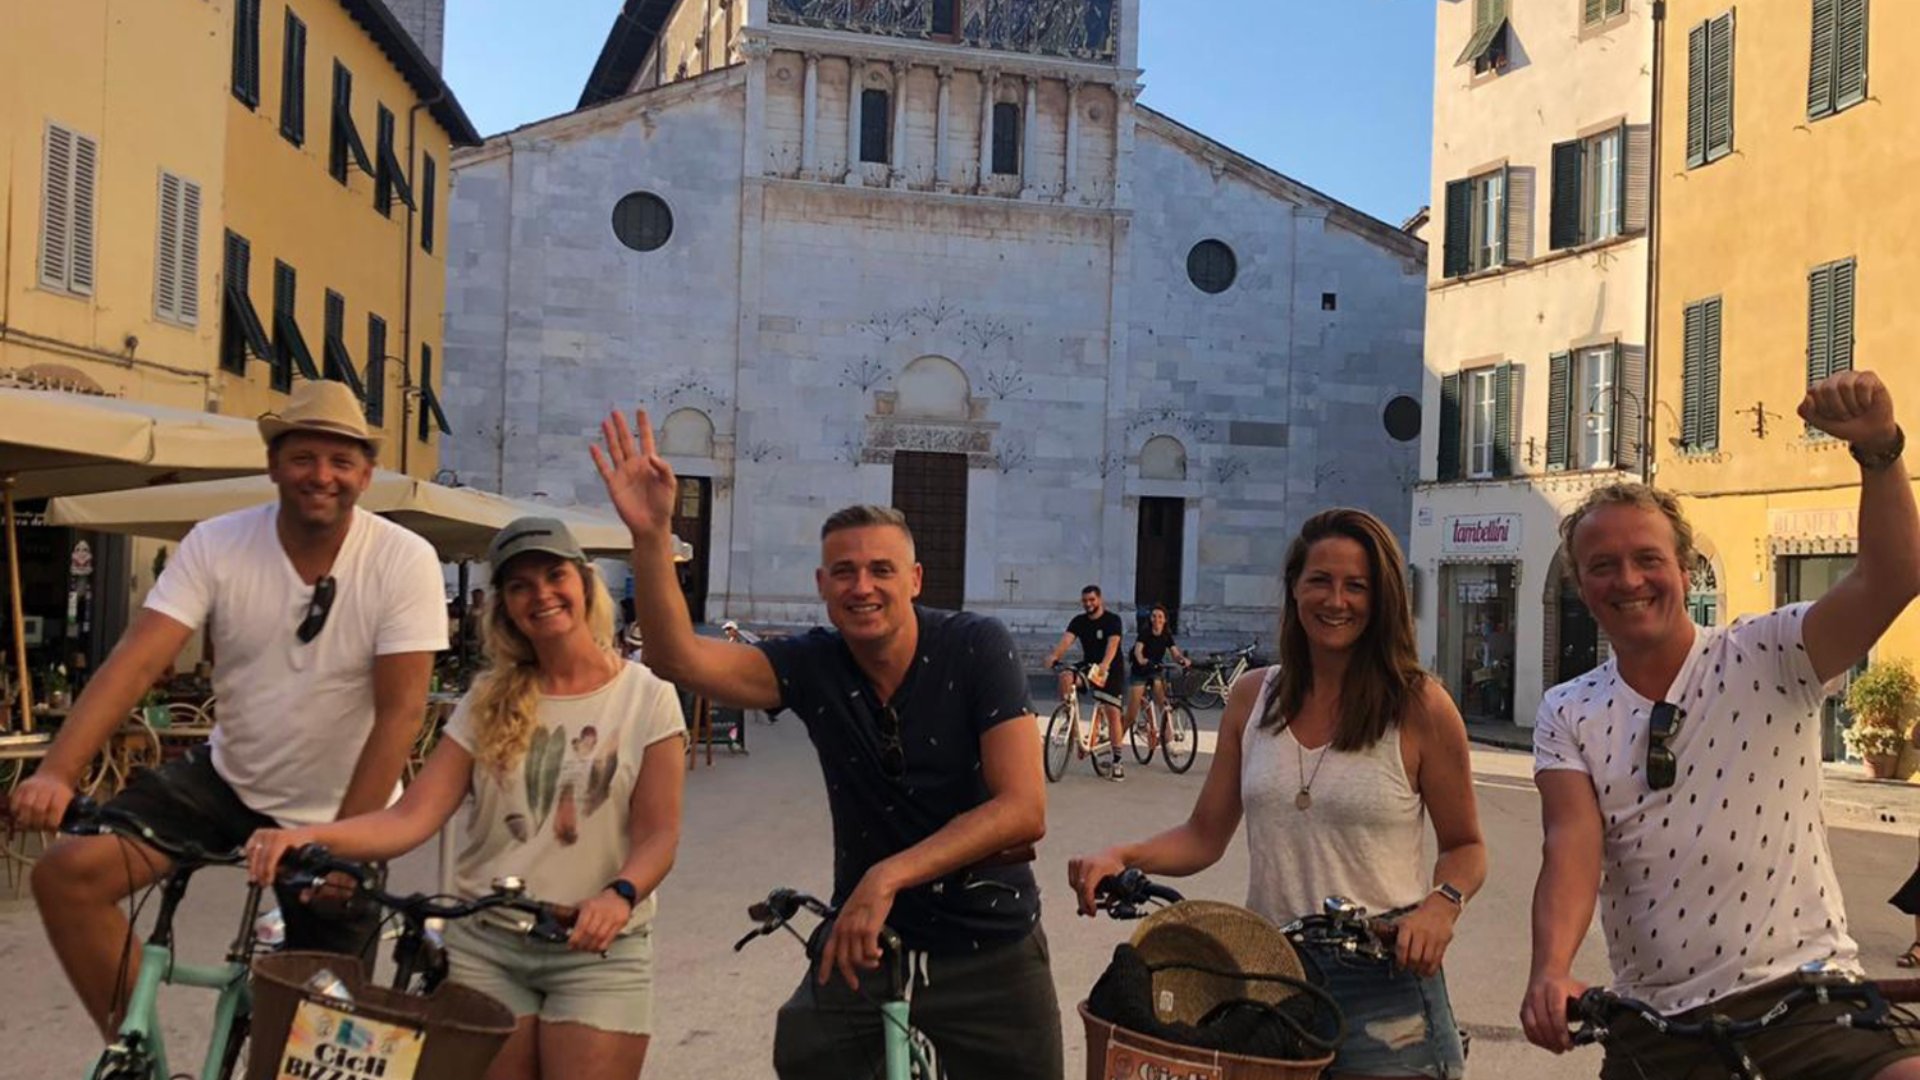 Geführte Radtour in Lucca für Familien und Kleingruppen